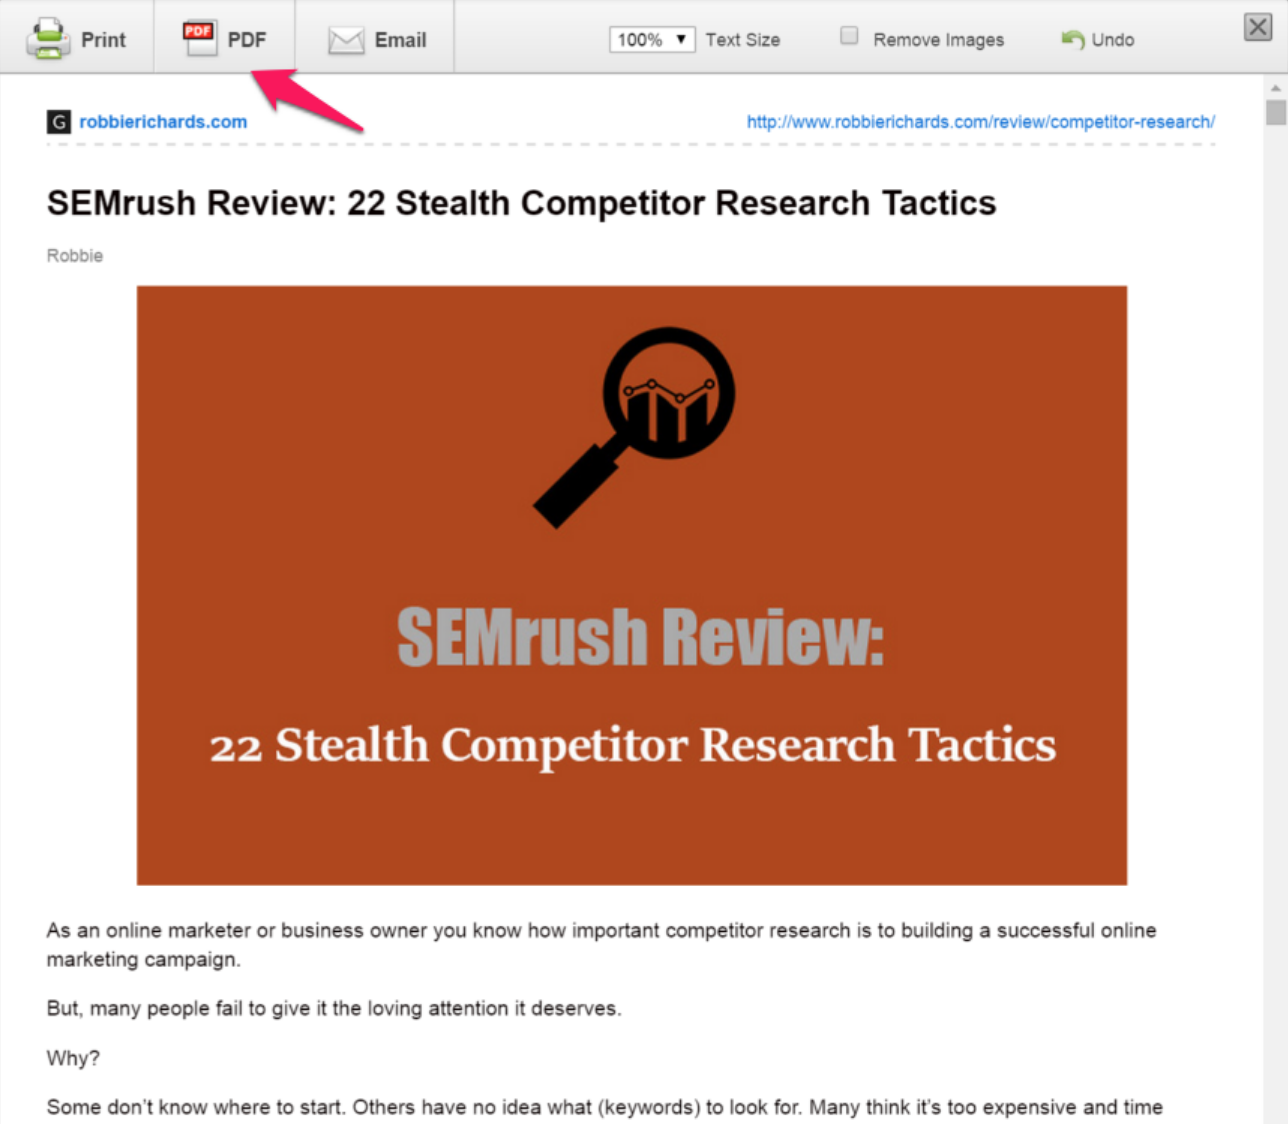 Screenshot showing a SEMrush review page